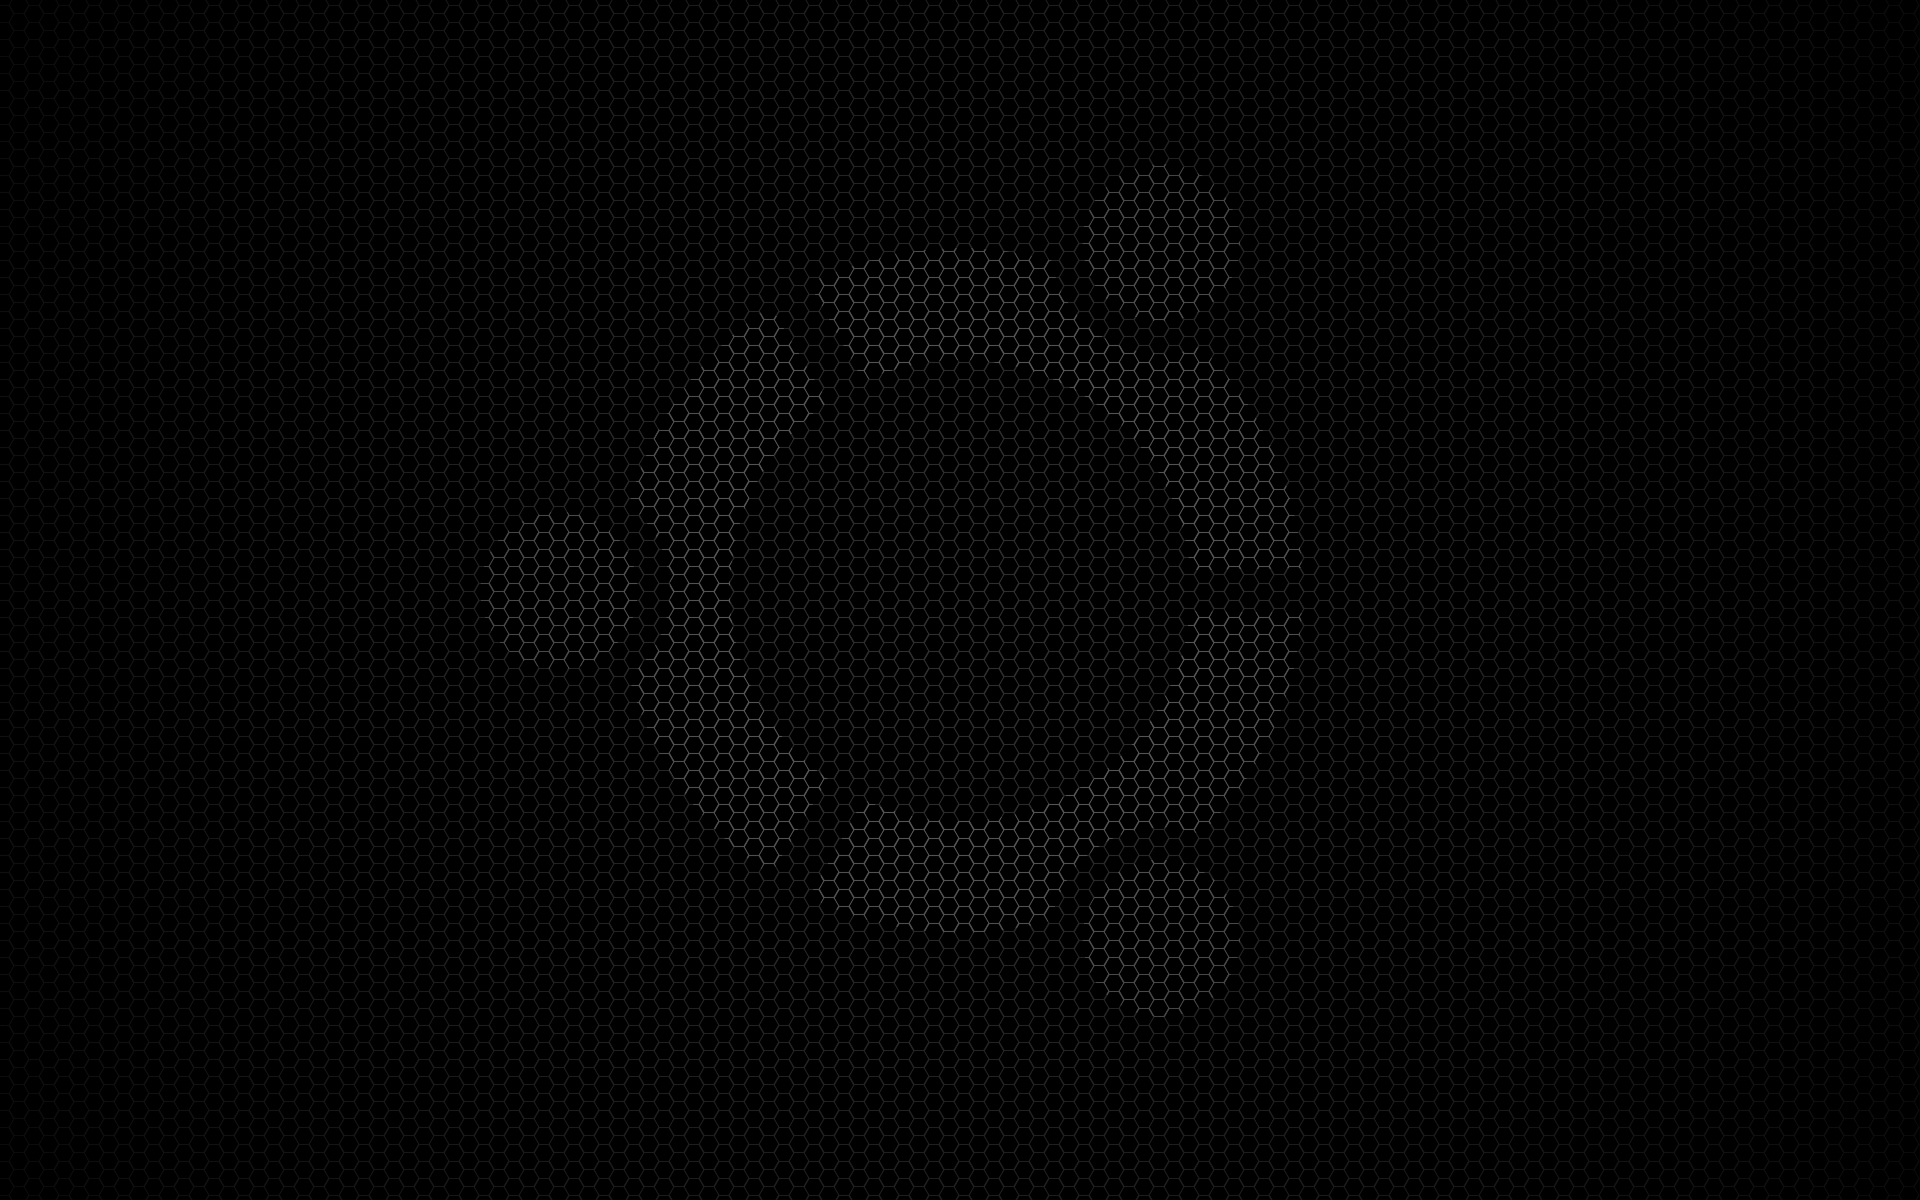 Bạn muốn có một hình nền cực cool cho máy tính của mình? Hãy xem bức ảnh đen trắng Ubuntu này. Sự kết hợp giữa điểm nhấn biểu tượng Ubuntu với nền đen tuyệt đẹp sẽ khiến bạn không thể rời mắt khỏi màn hình.